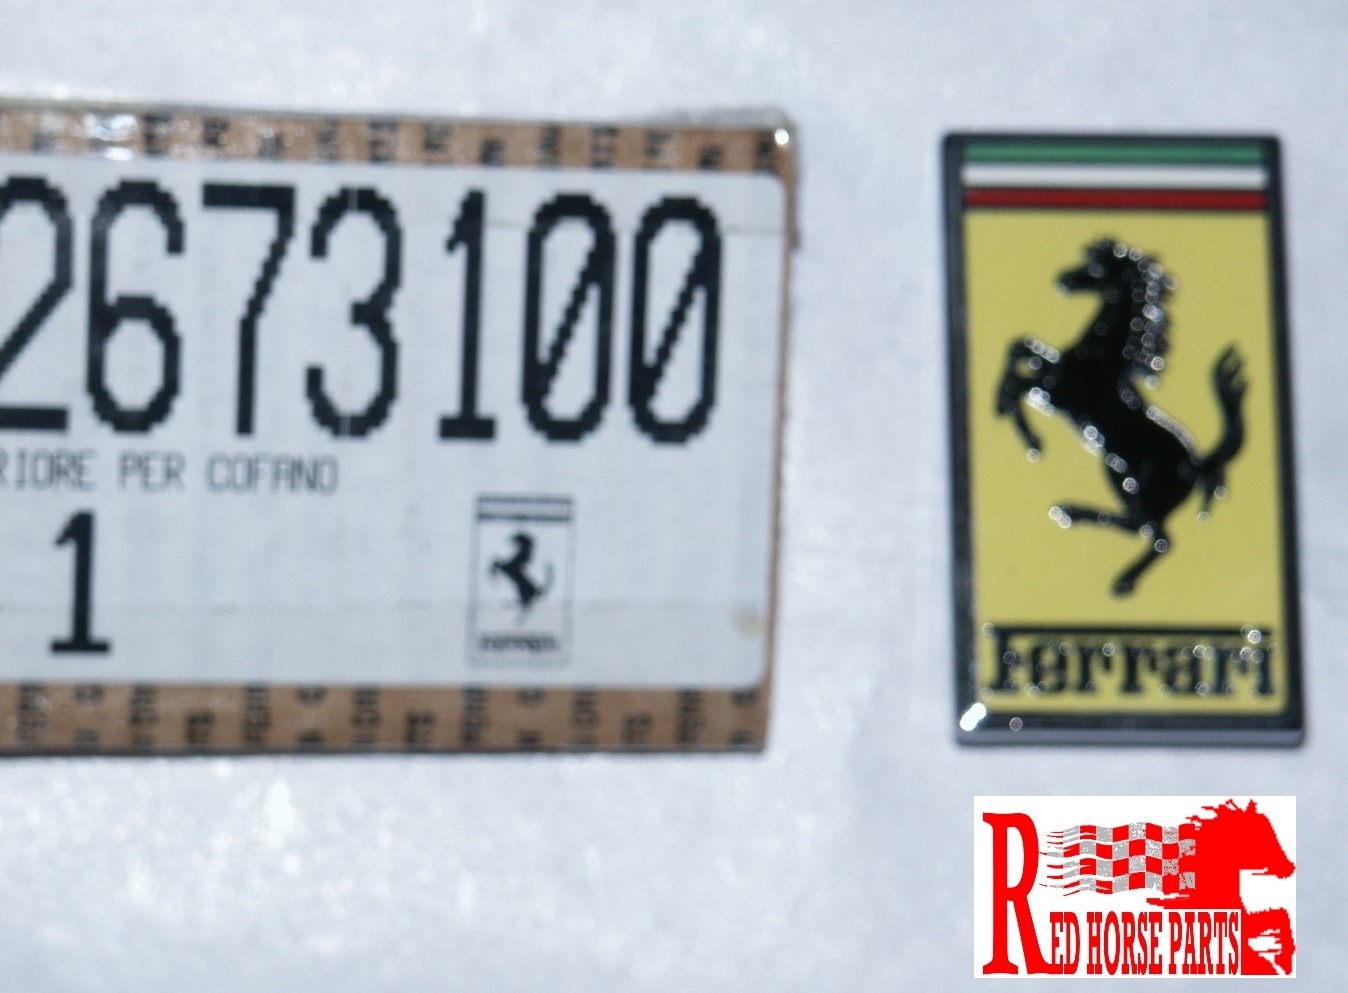 Ferrari 308 front badge emblem